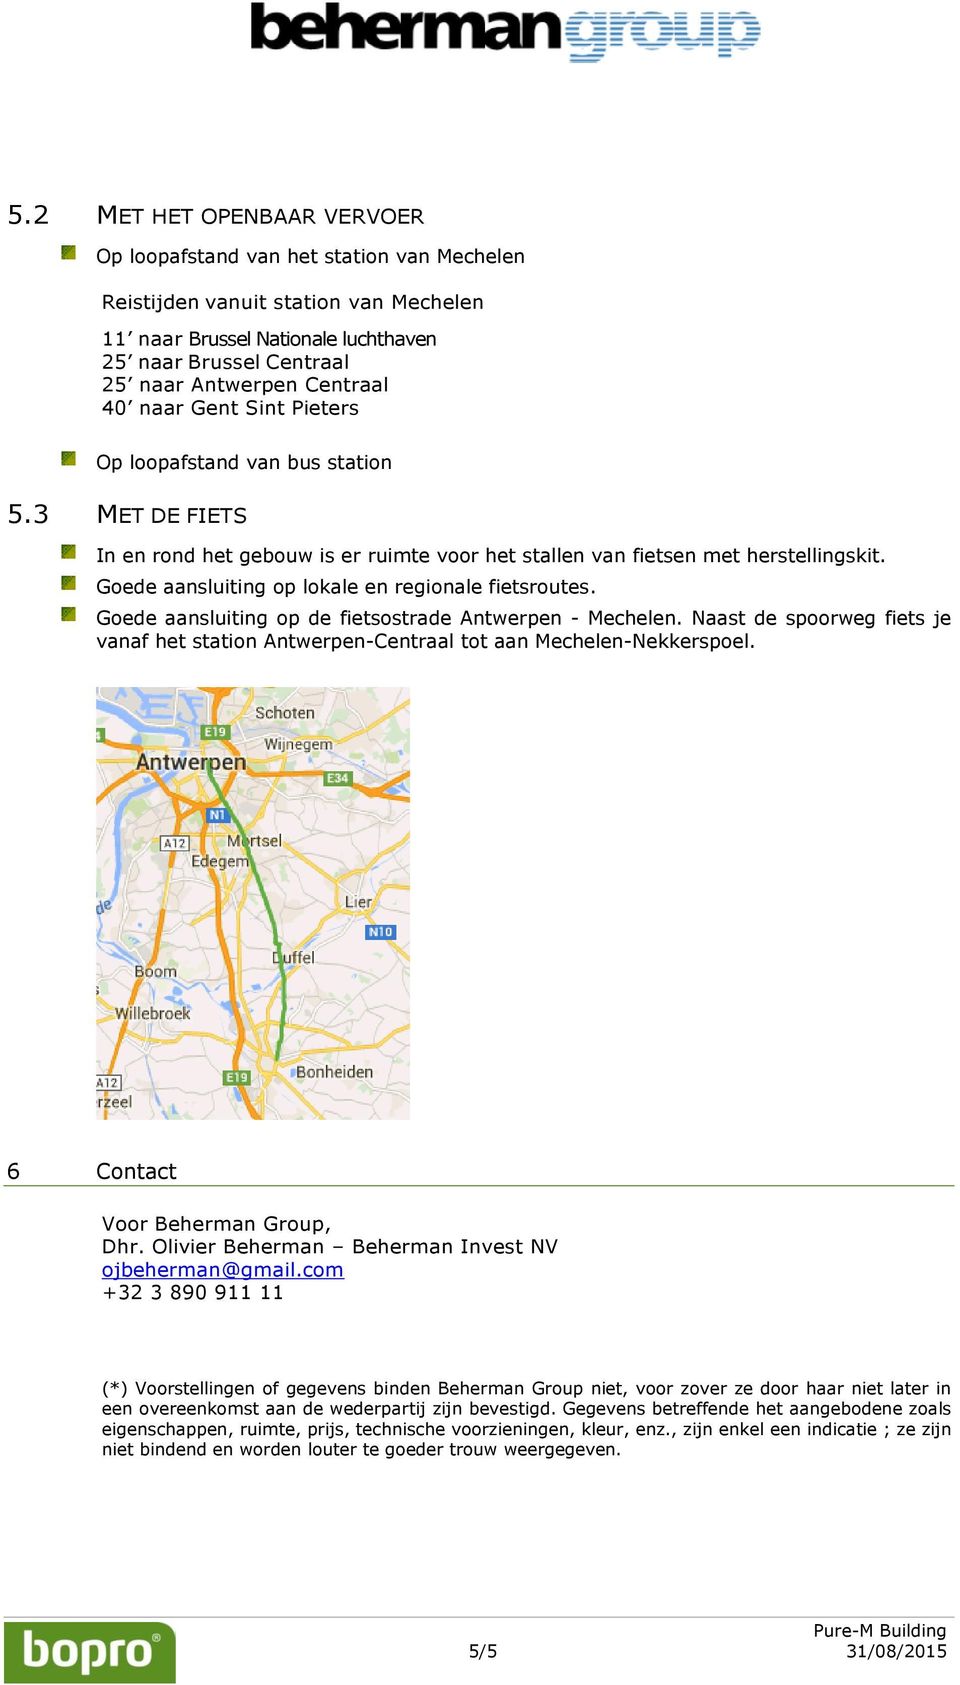 Gede aansluiting p de fietsstrade Antwerpen - Mechelen. Naast de sprweg fiets je vanaf het statin Antwerpen-Centraal tt aan Mechelen-Nekkerspel. 6 Cntact Vr Beherman Grup, Dhr.